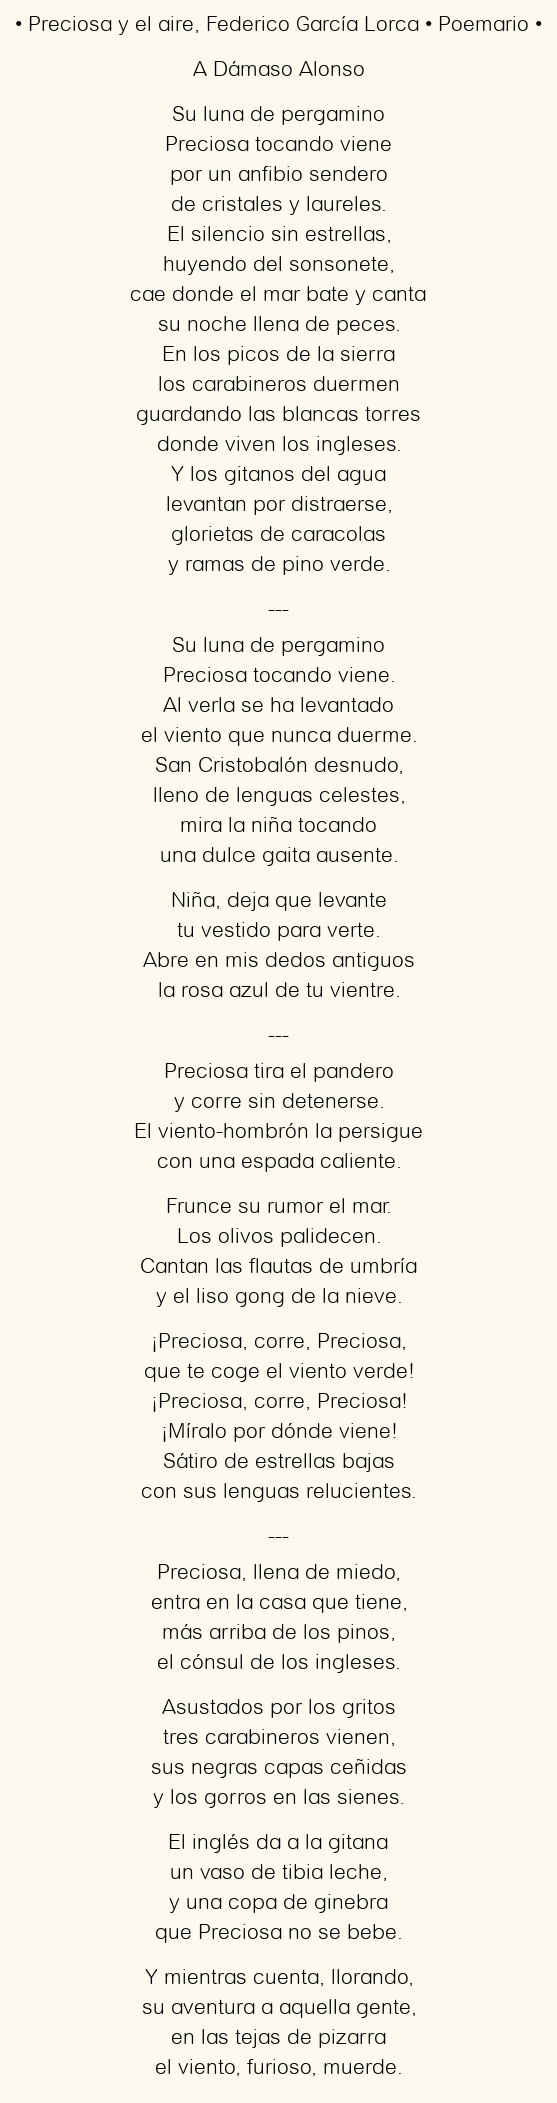 Imagen con el poema Preciosa y el aire, por Federico García Lorca